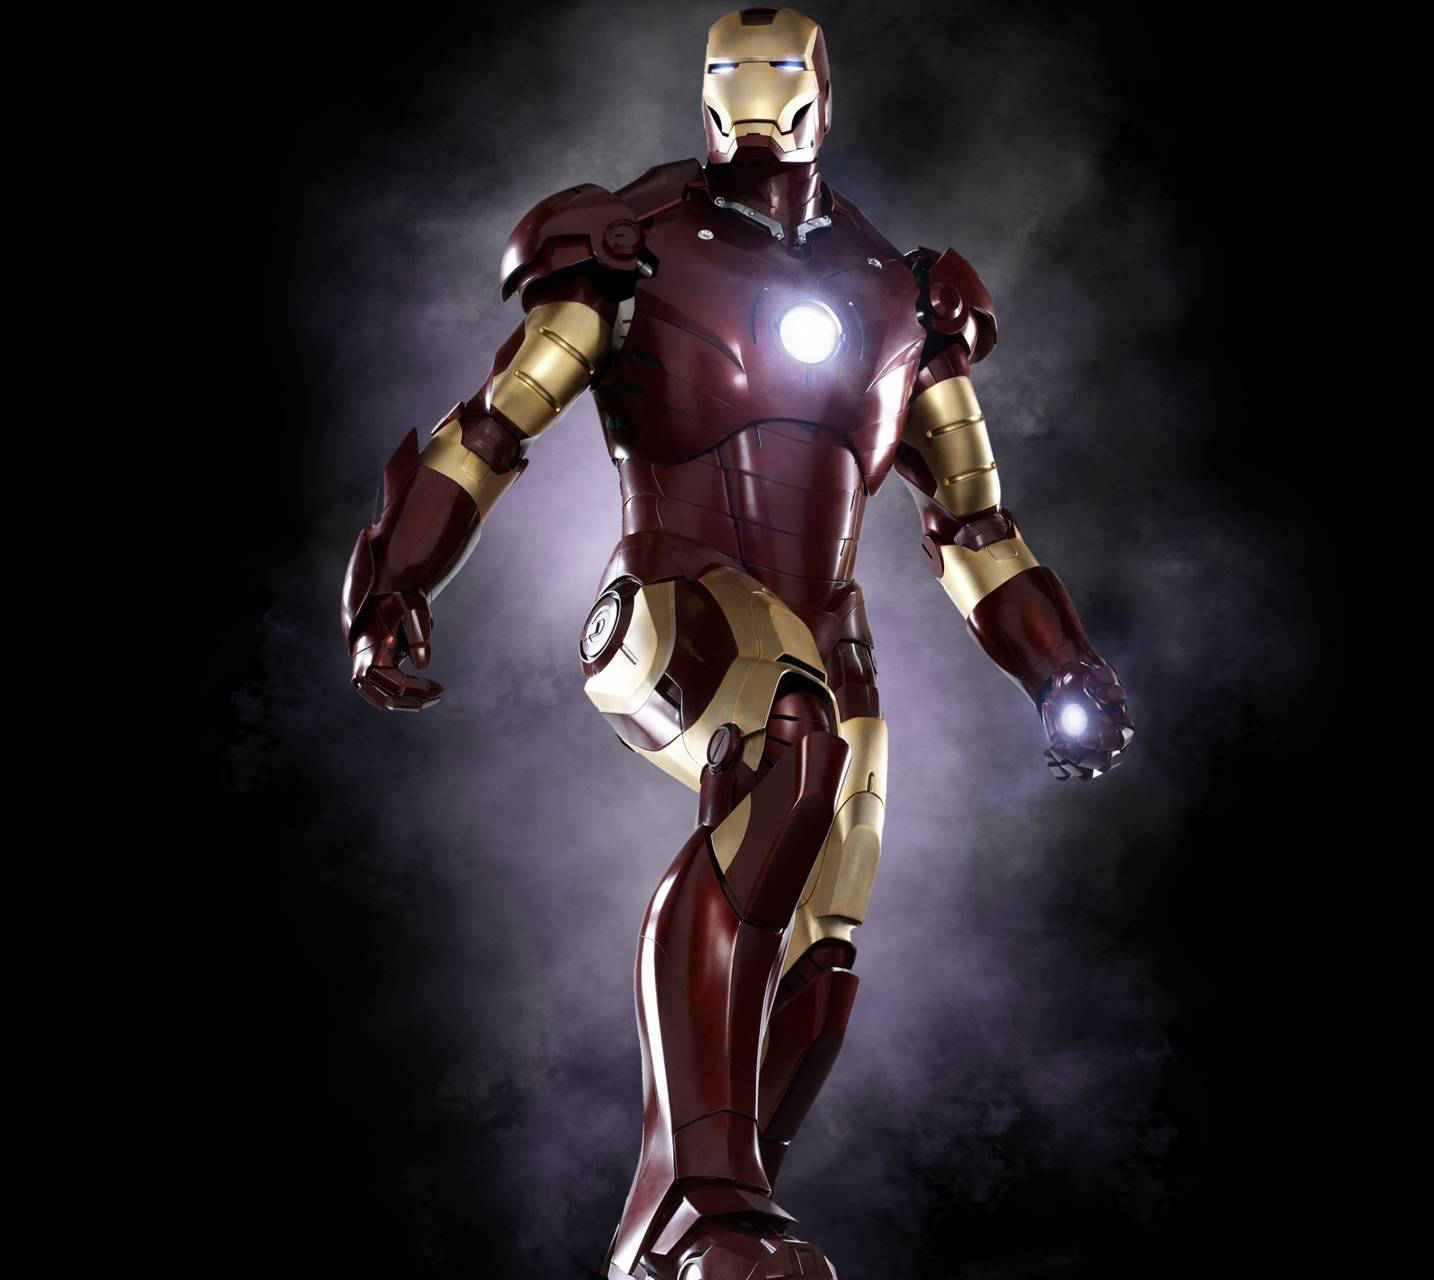 Dette er Iron Man Mark 3, hvor Tony Stark perfektionerede sin helteform. Wallpaper